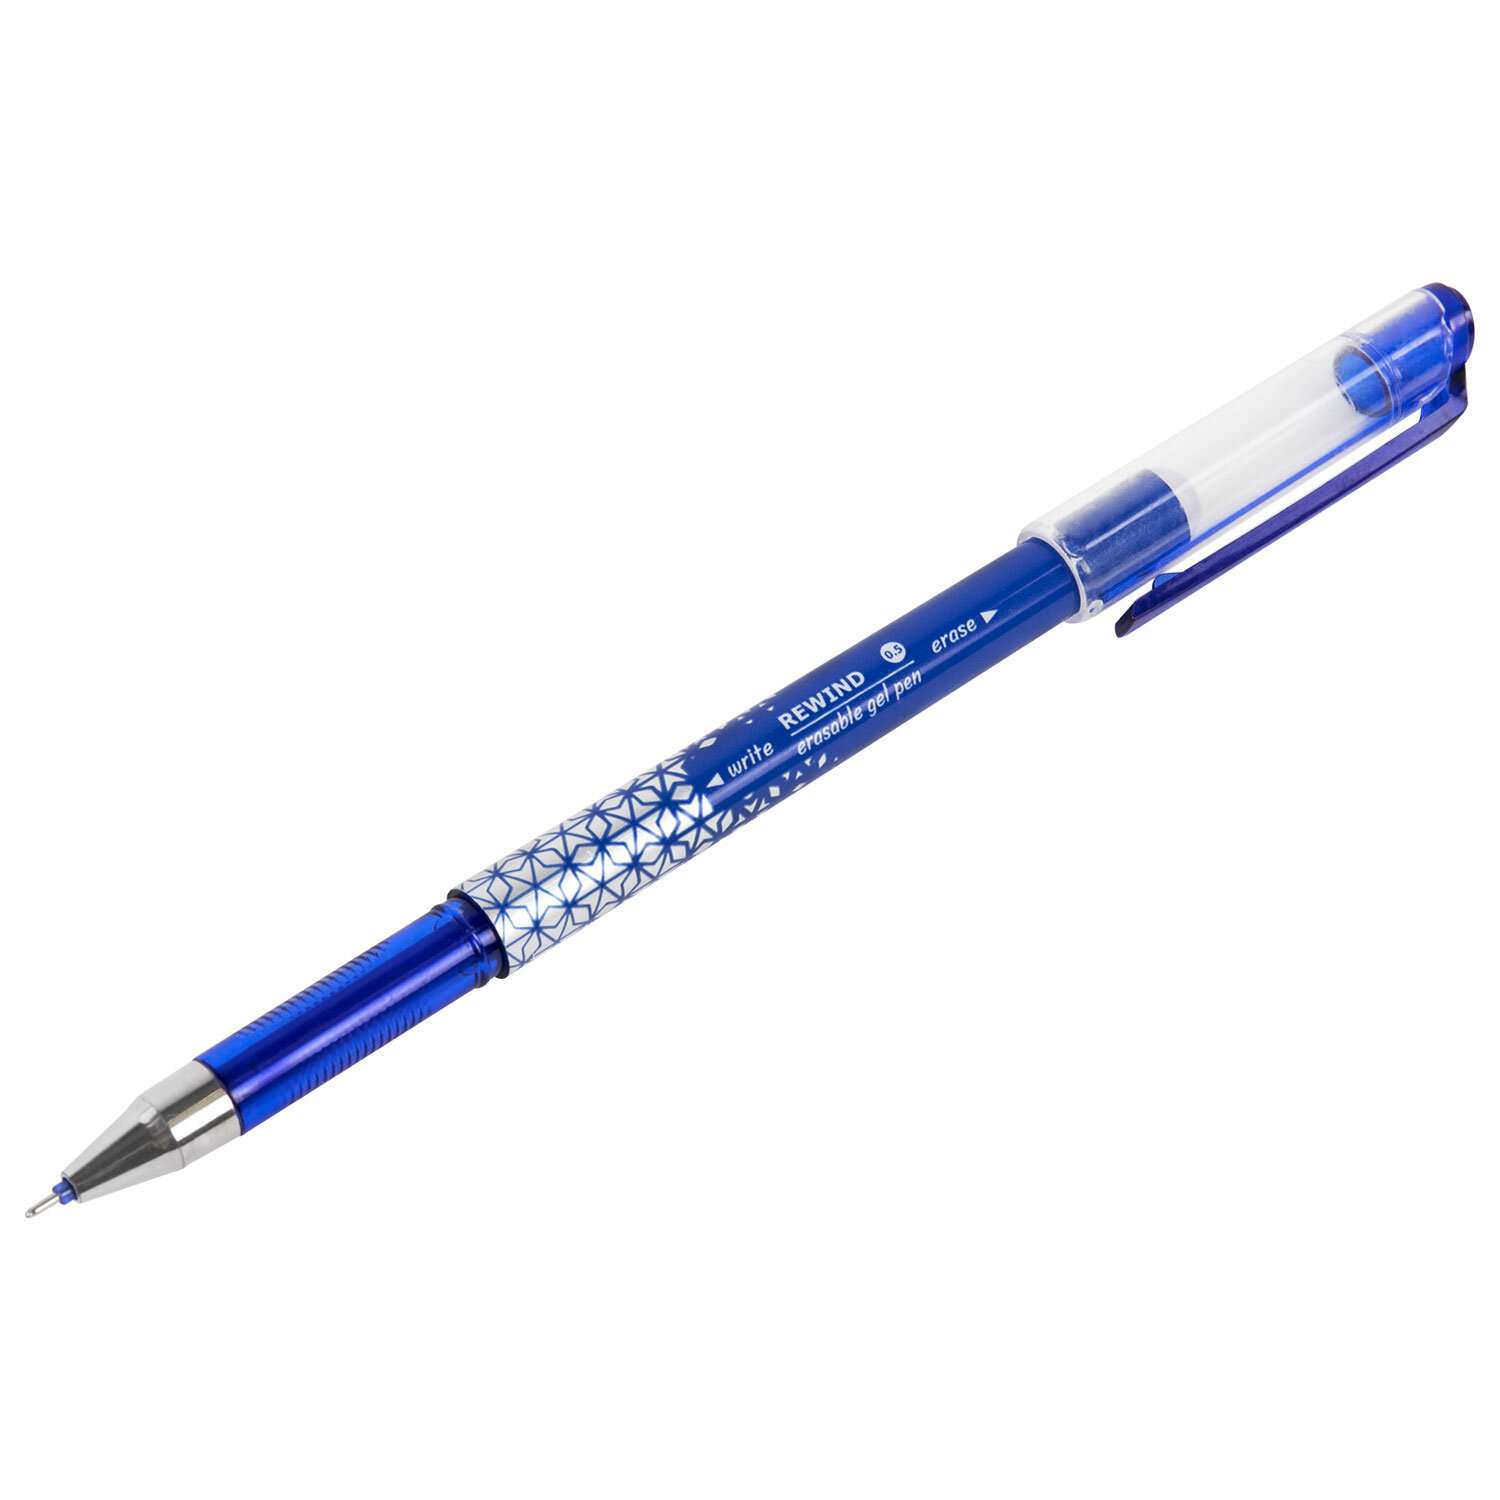 Ручка гелевая Brauberg пиши стирай синяя набор со стержнями 5 штук стираемые - фото 6